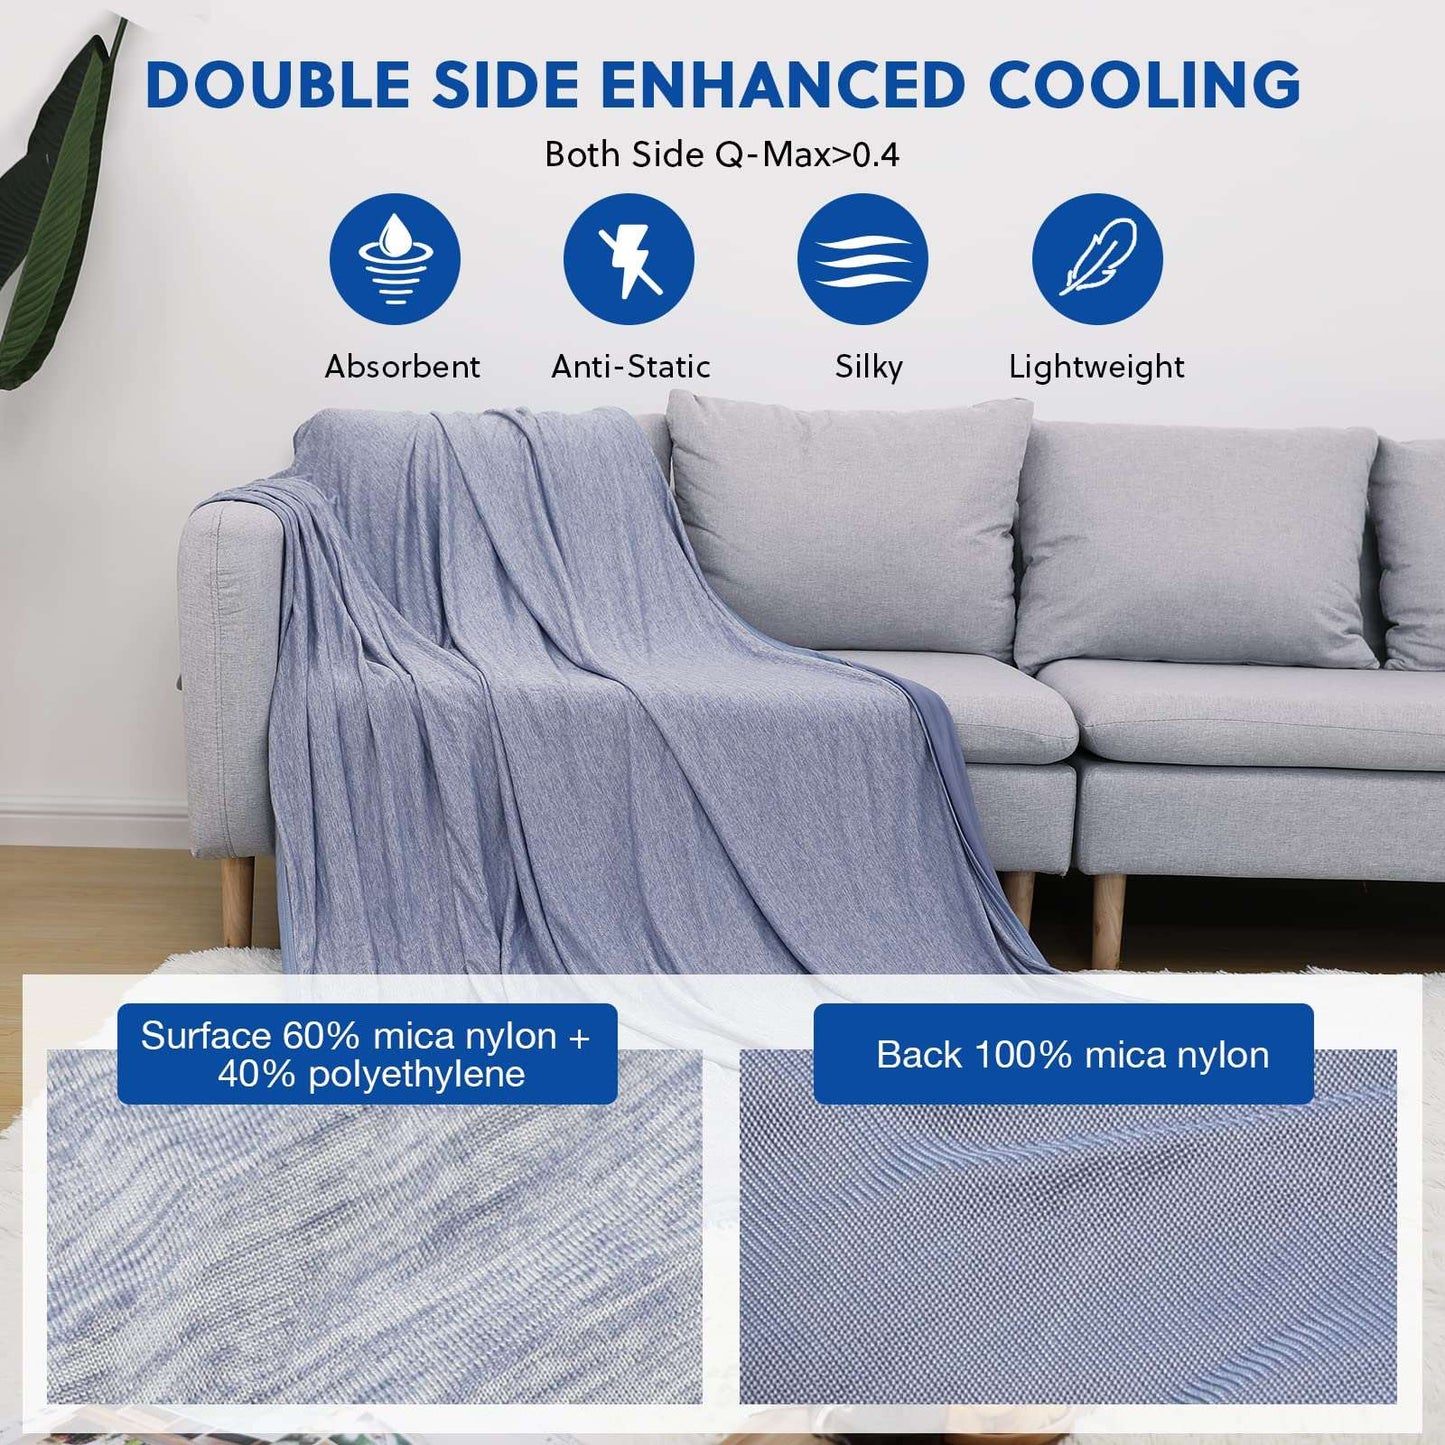 Lightweight Cooling Blanket